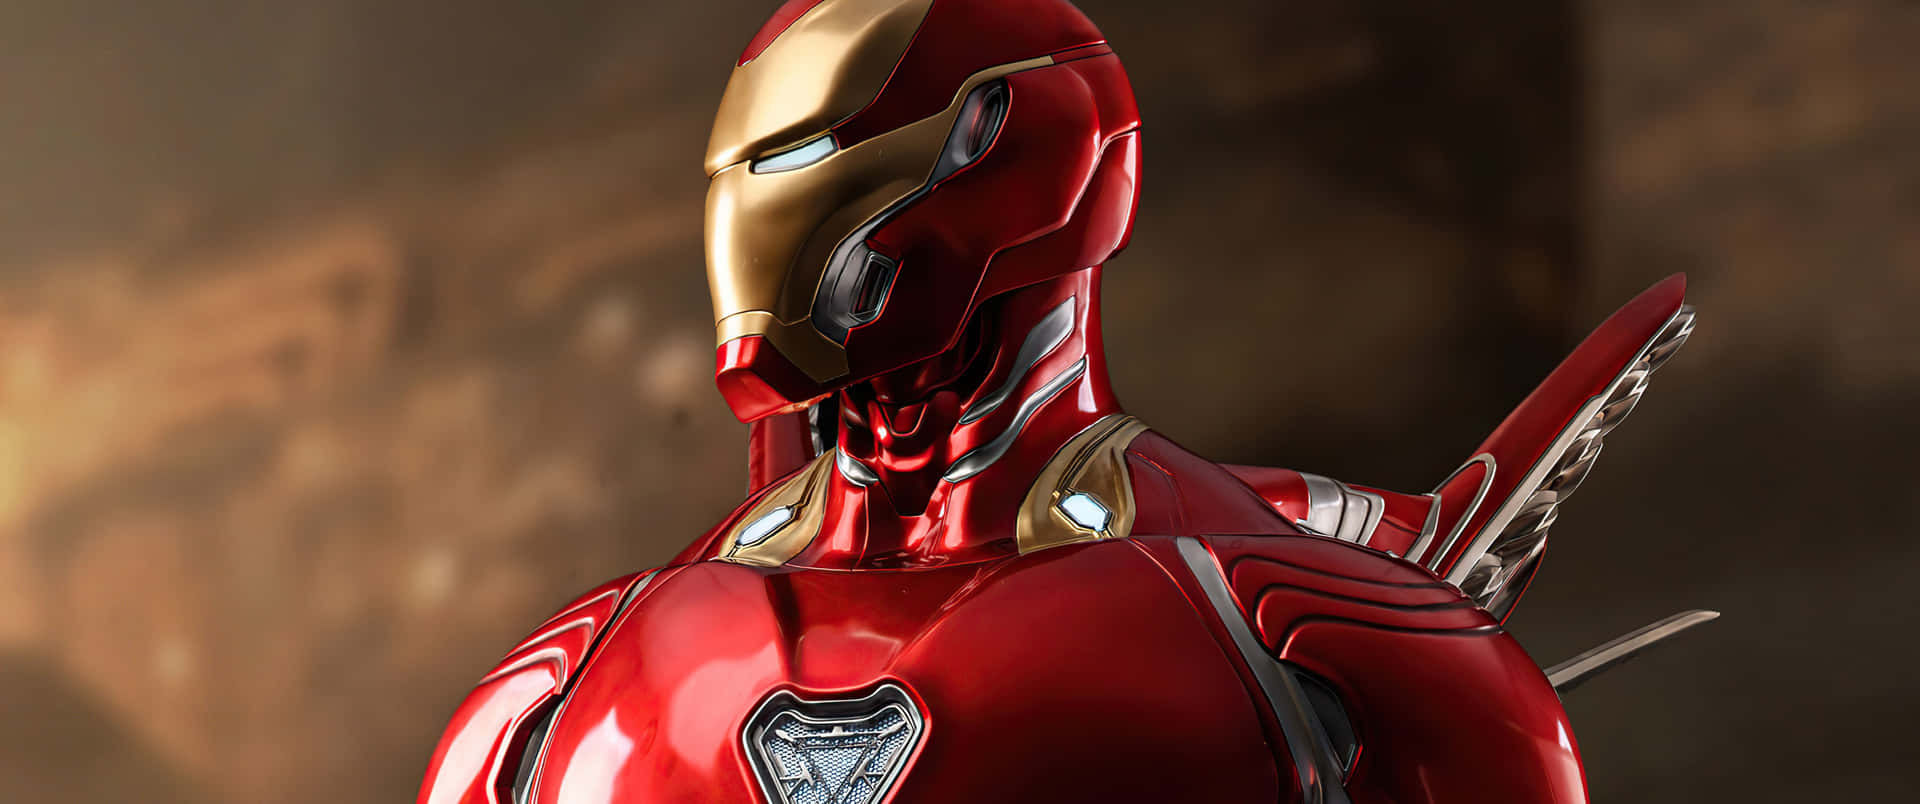 Iron Man Armor Close Up Wallpaper